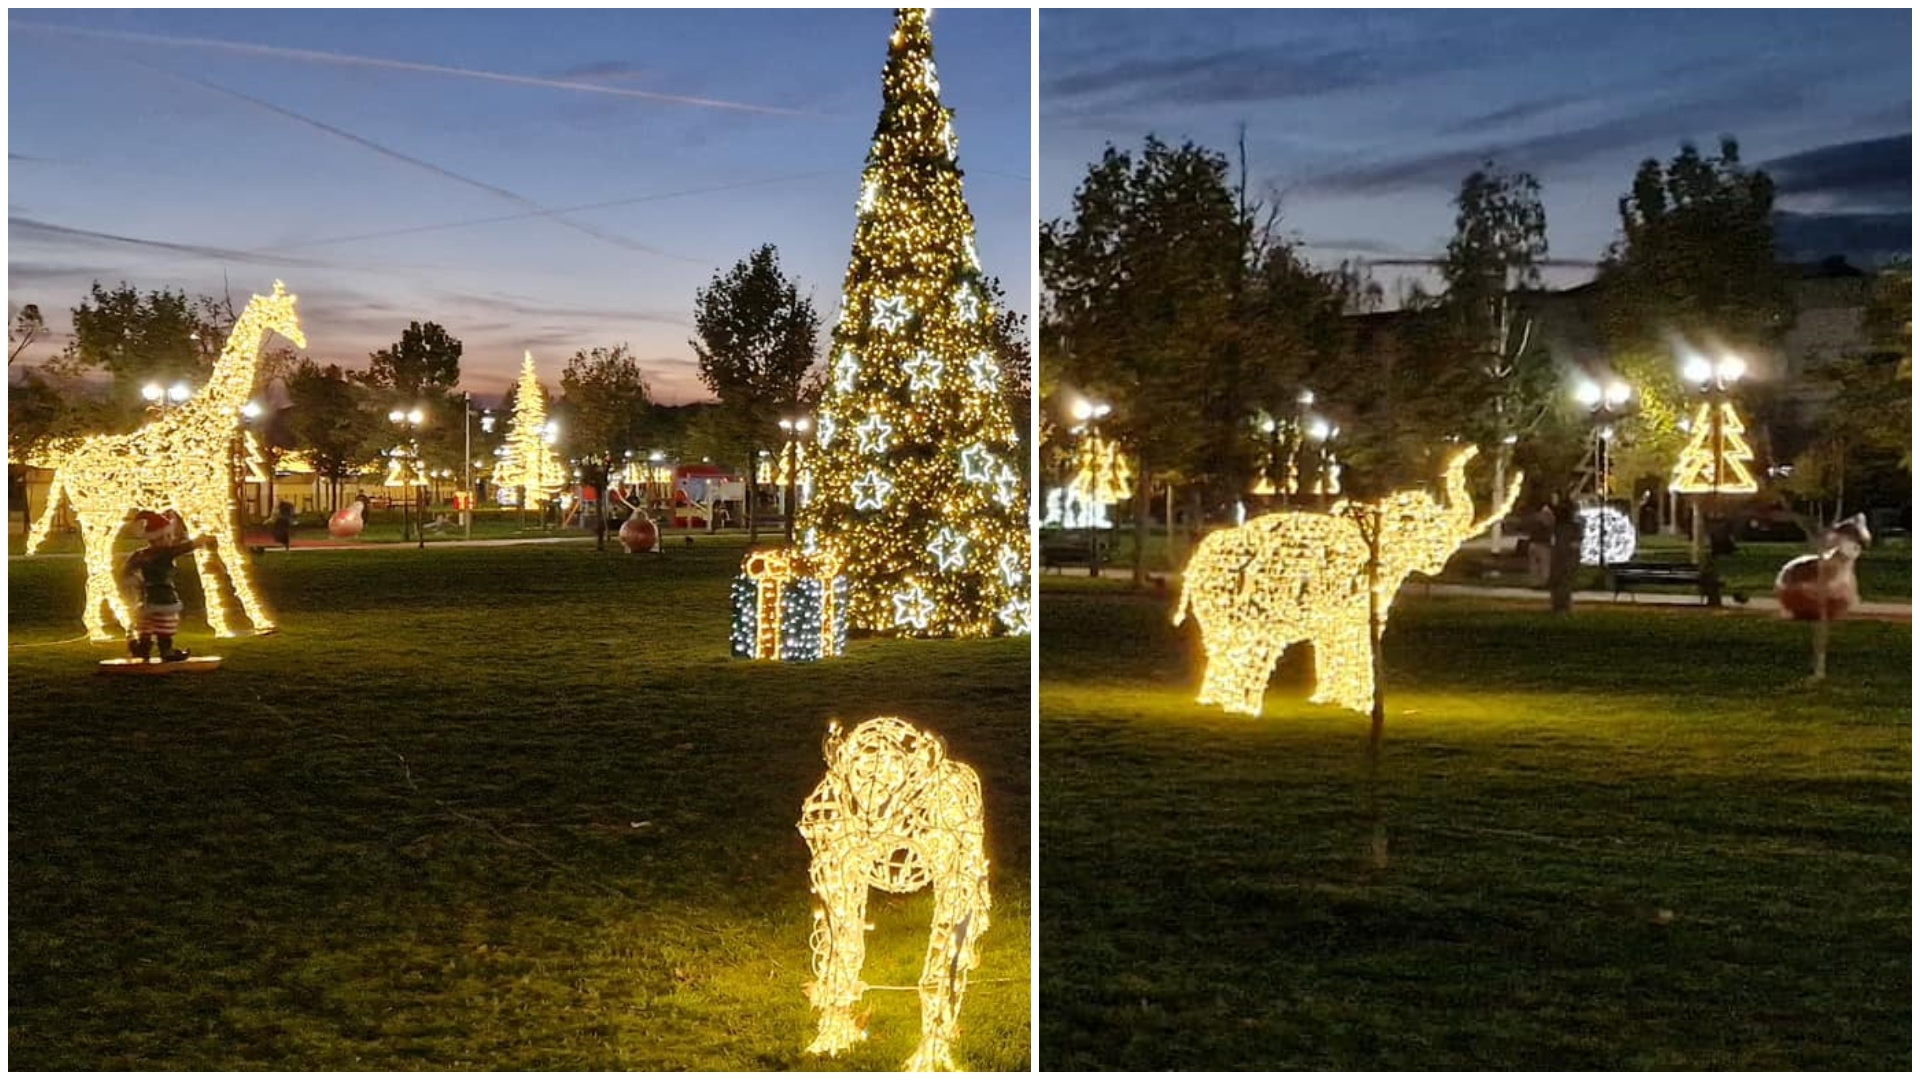 Orașul din România în care autoritățile s-au făcut de râs. L-au împodobit pentru Crăciun cu decorațiuni din… Africa: o girafă, un elefant și un tigru